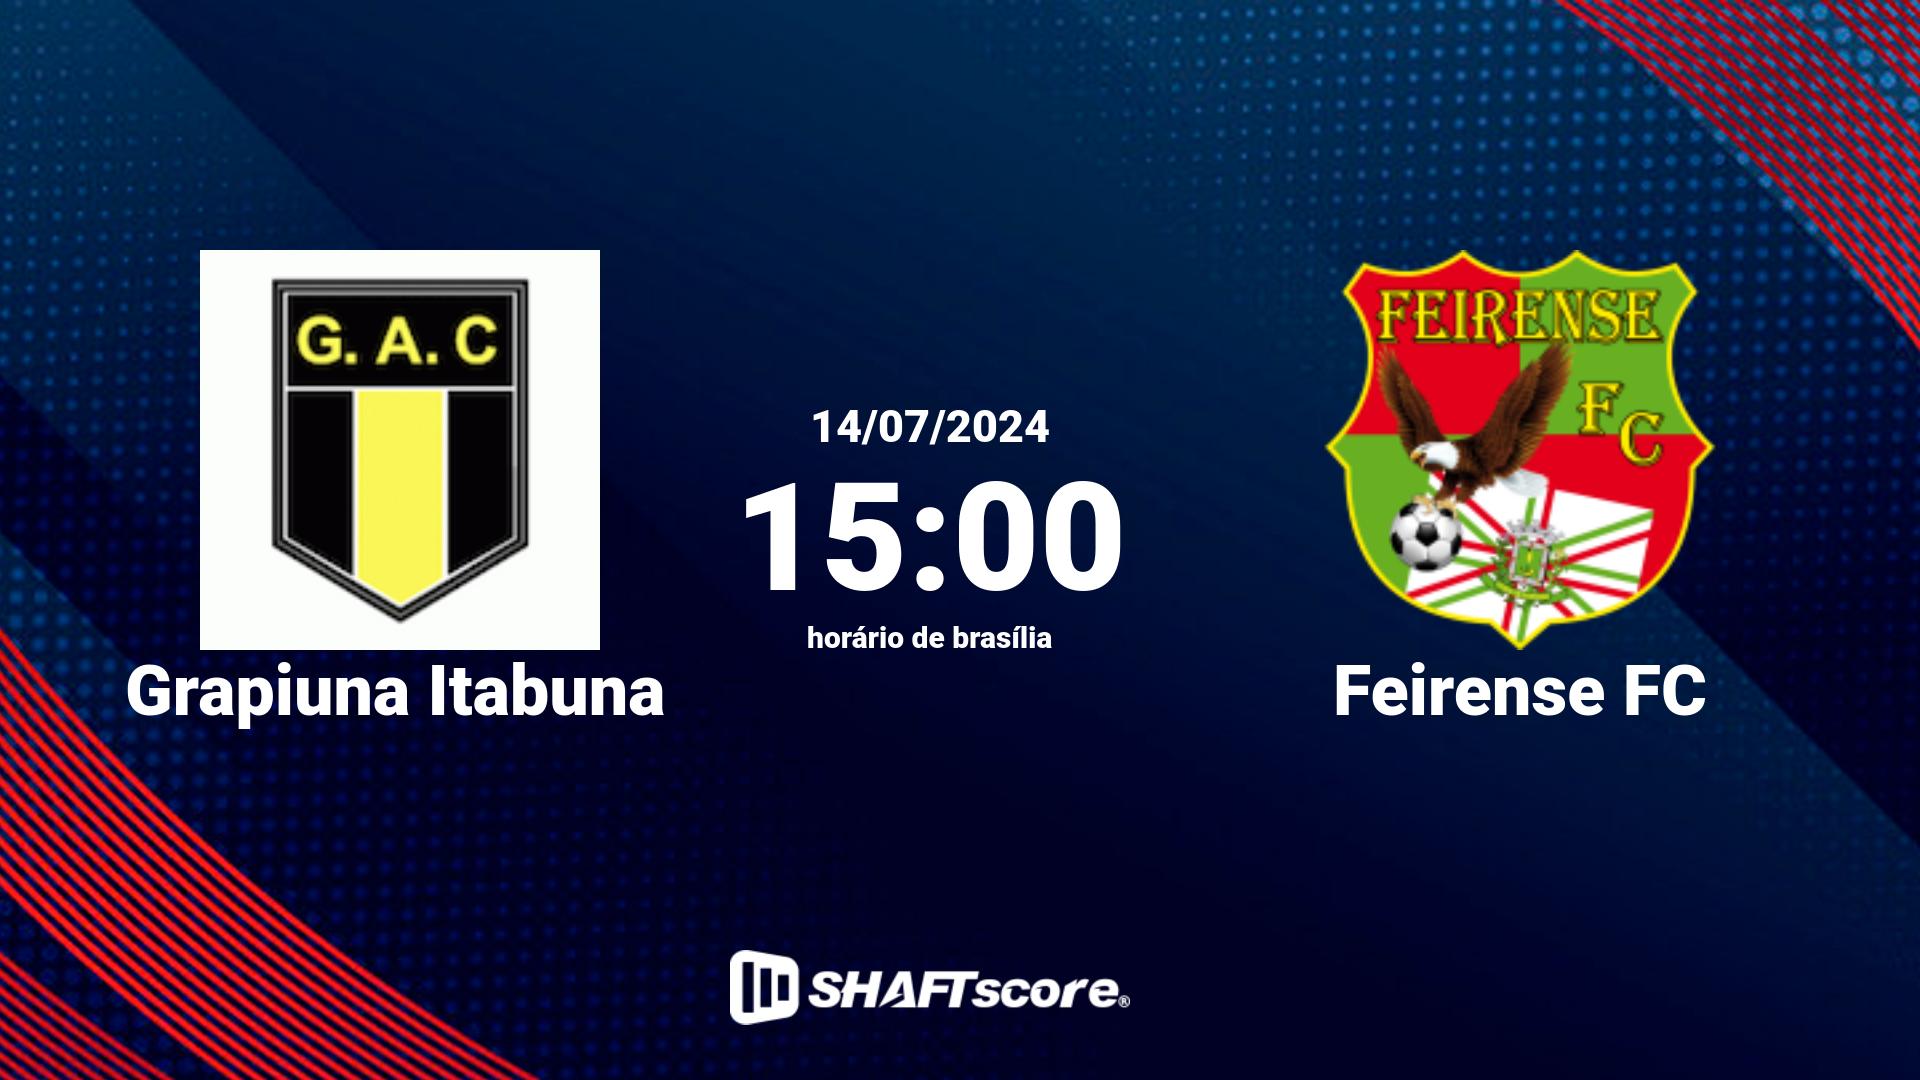 Estatísticas do jogo Grapiuna Itabuna vs Feirense FC 14.07 15:00